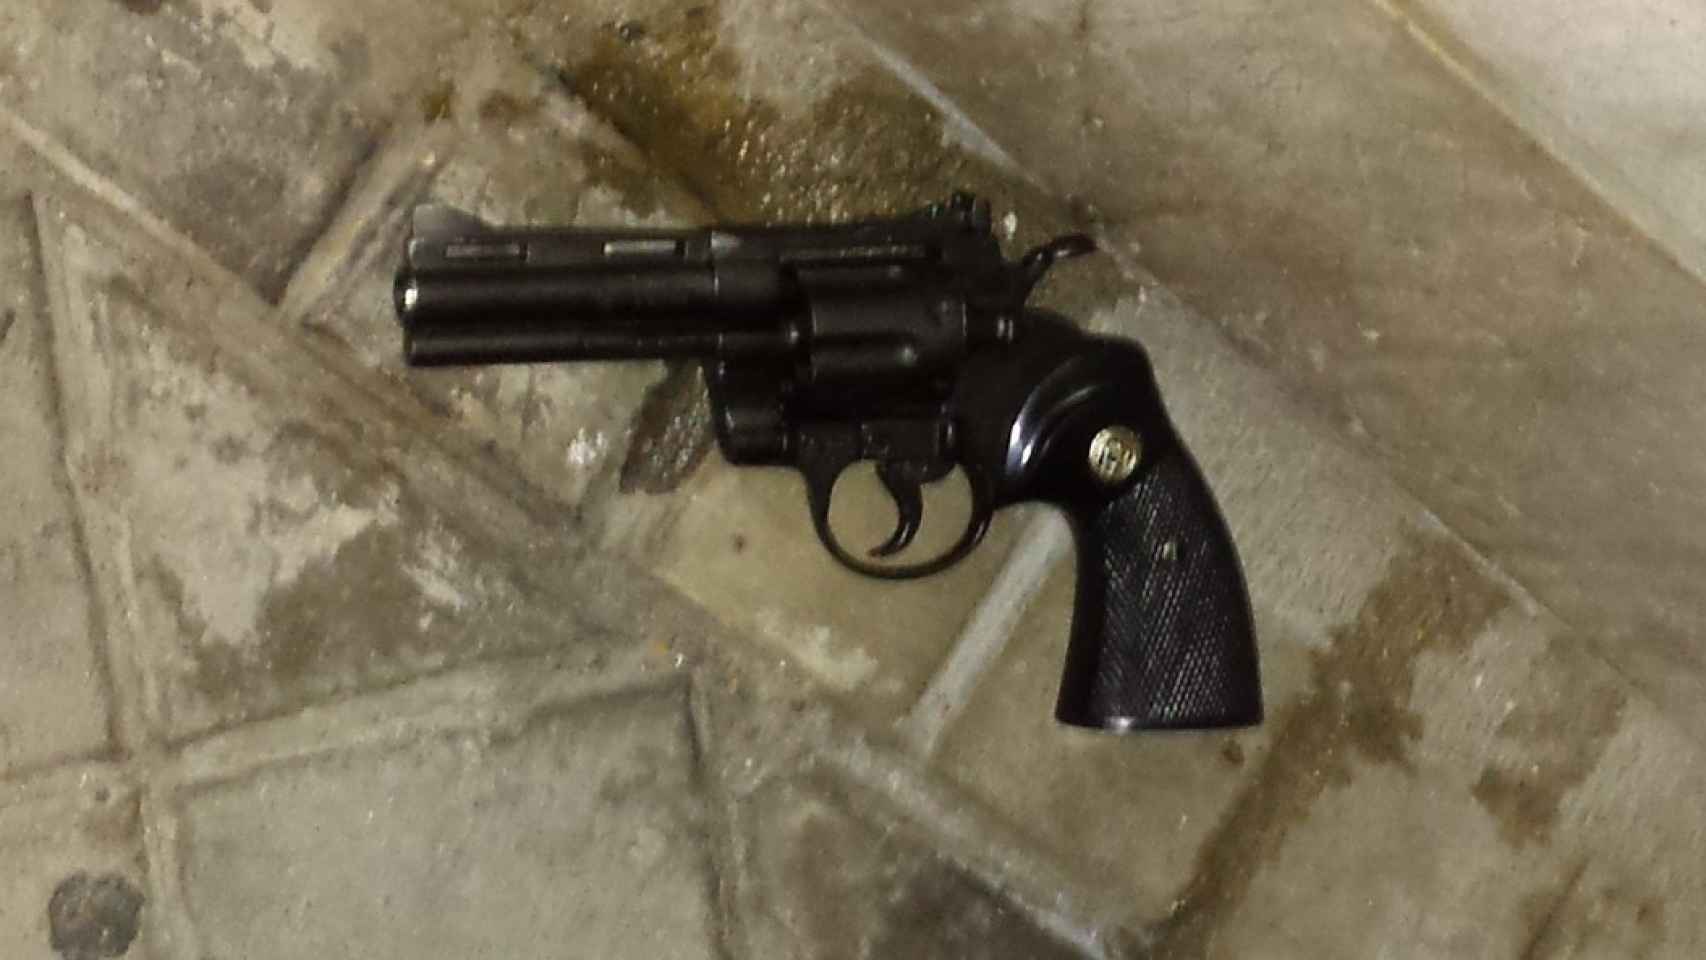 Pistola del atracador de Carabanchel intervenida por la Policía.